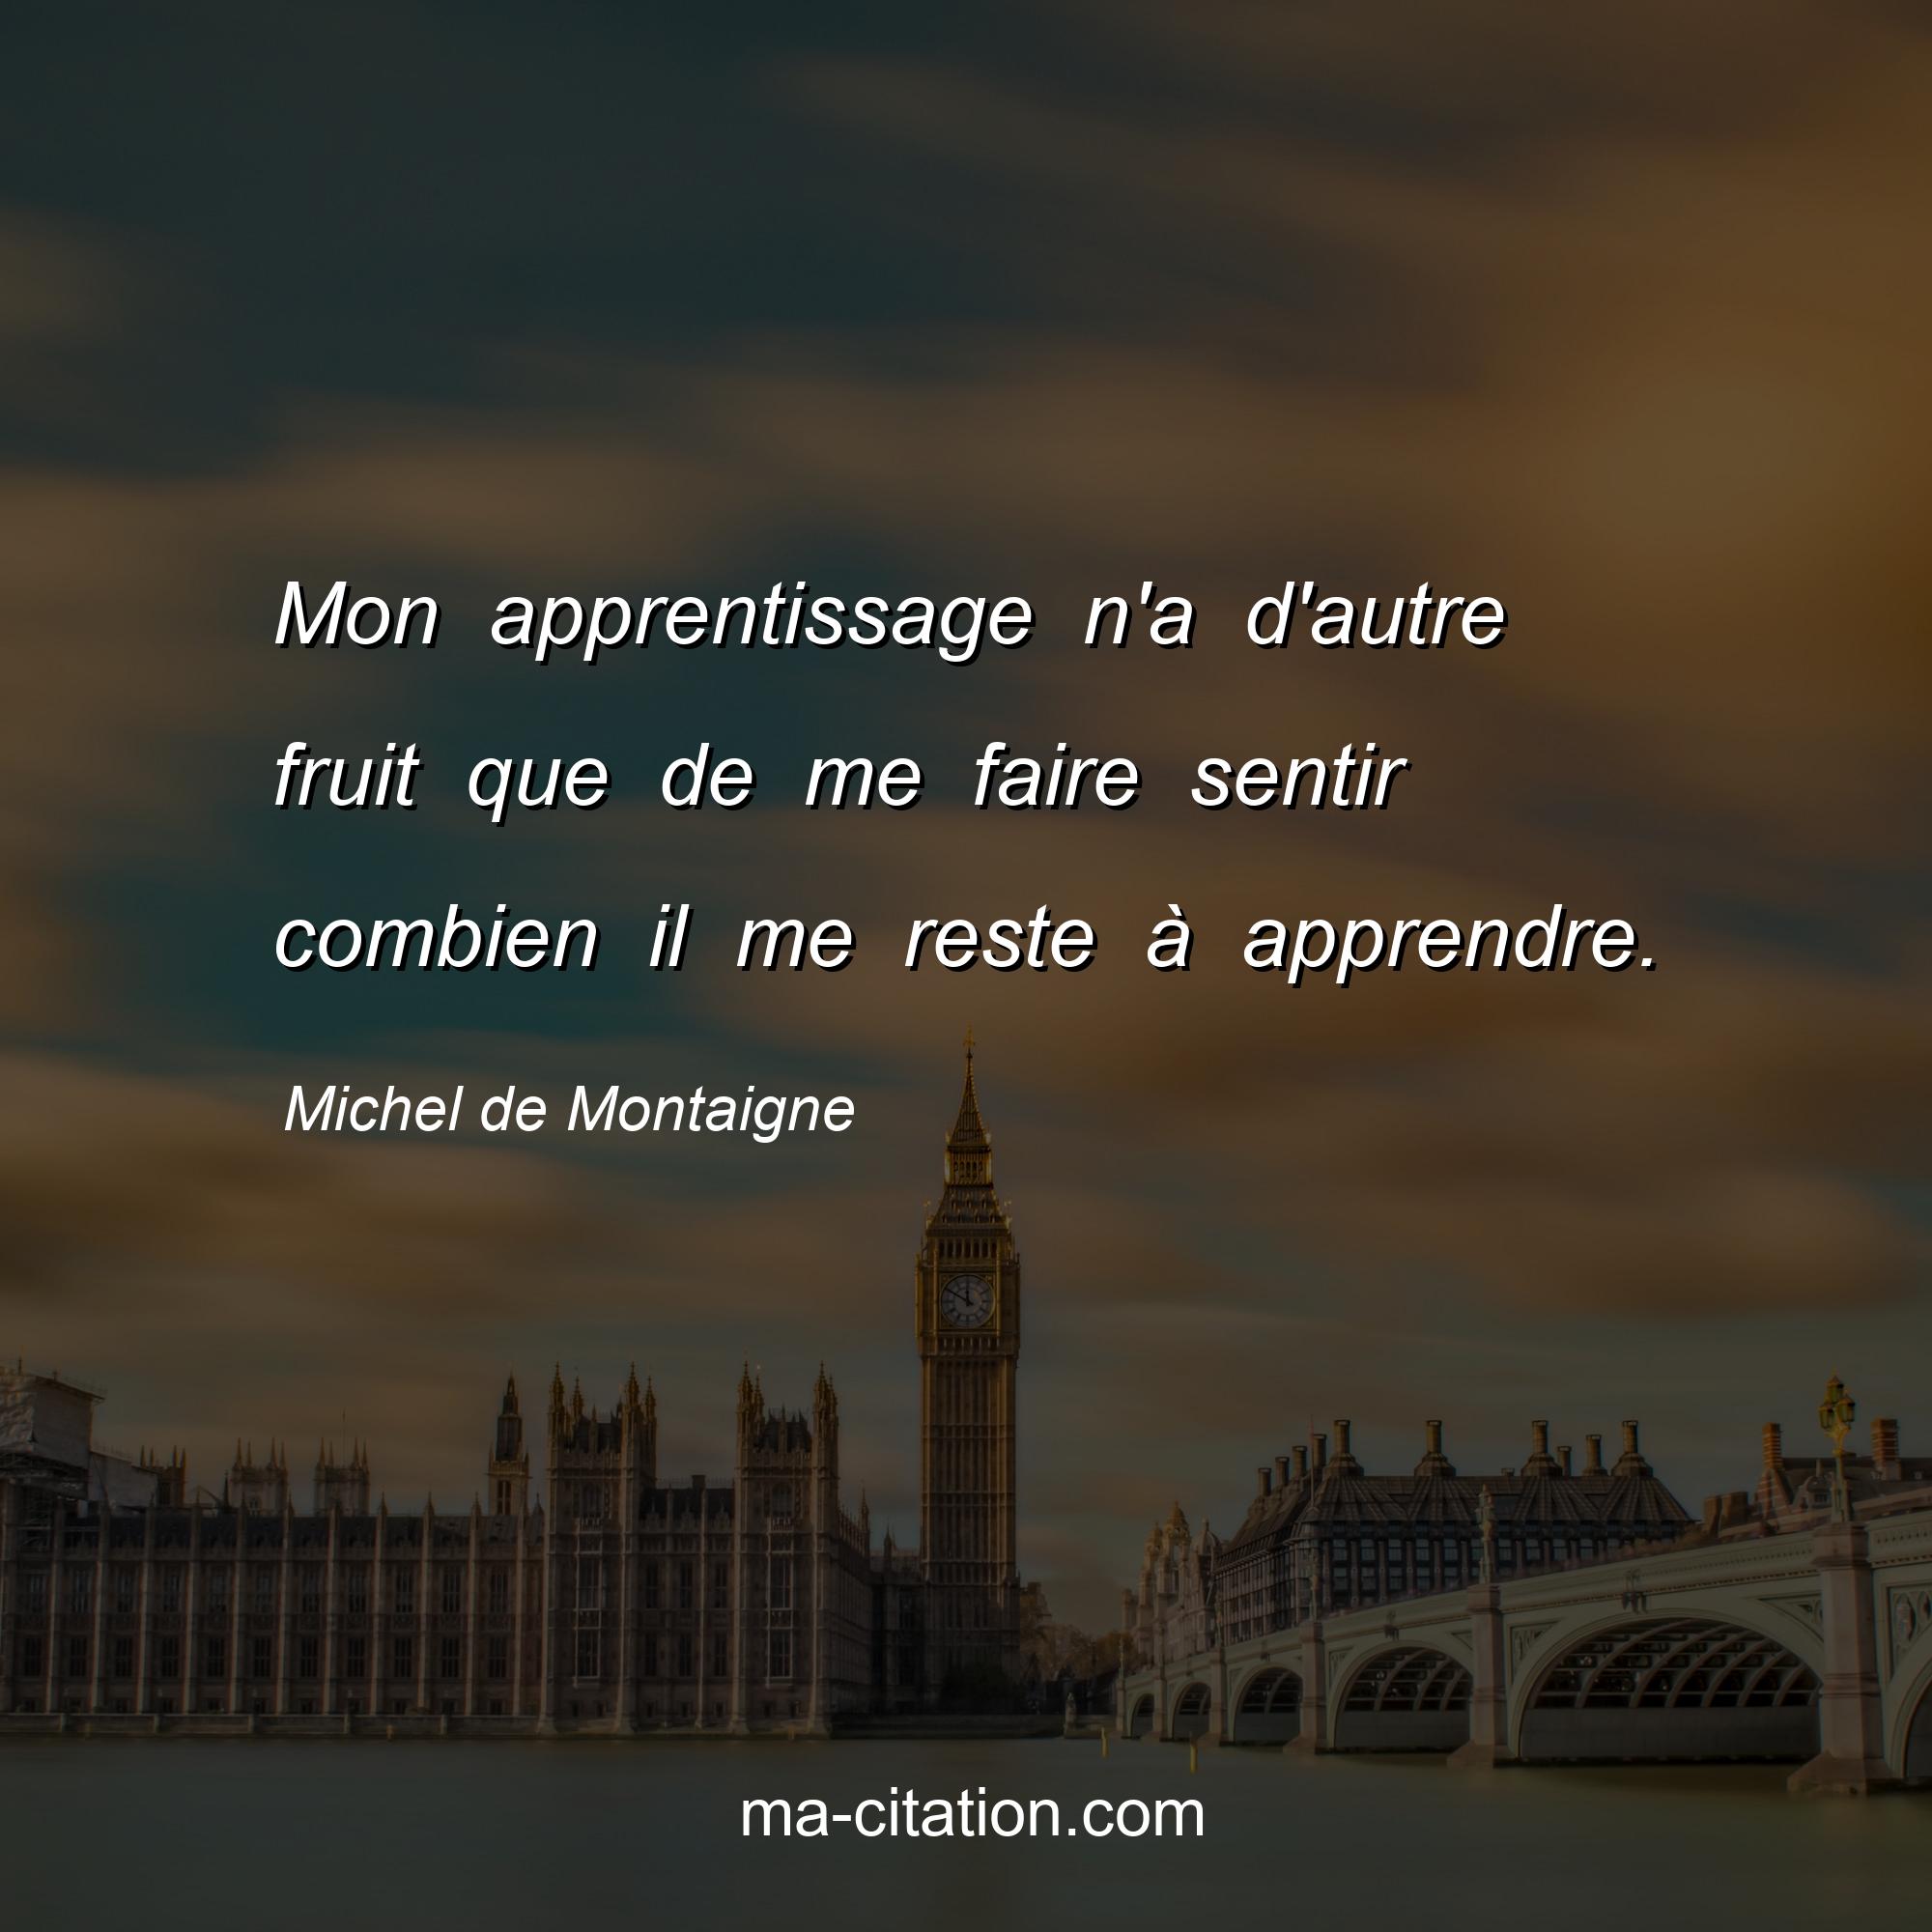 Michel de Montaigne : Mon apprentissage n'a d'autre fruit que de me faire sentir combien il me reste à apprendre.